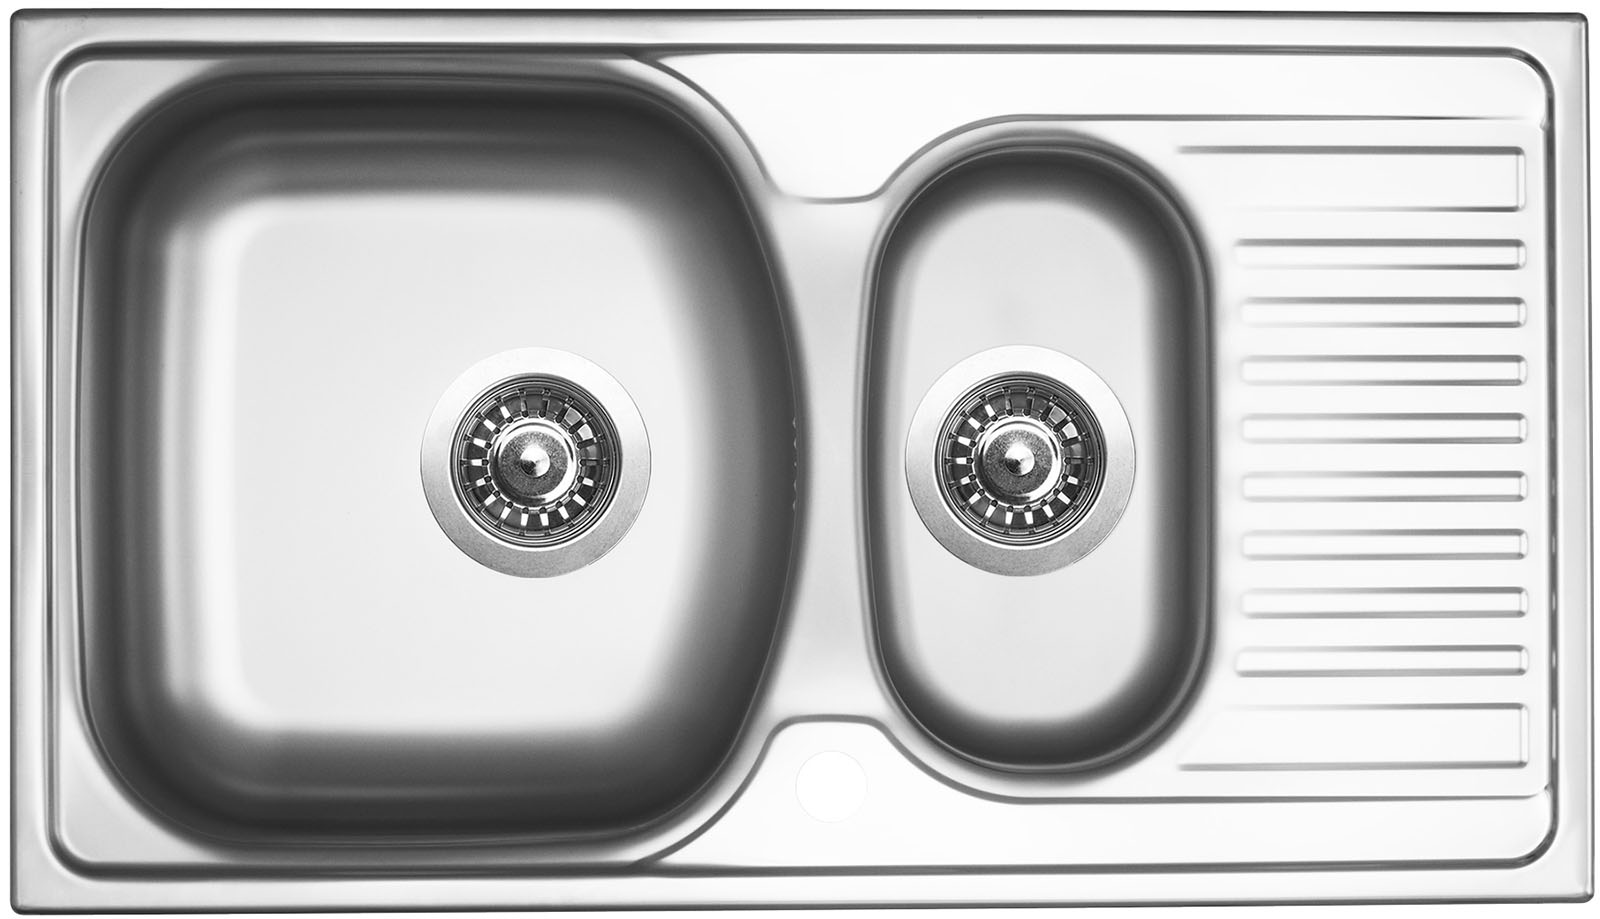 Sinks TWIN 780.1 V 0,6mm matný